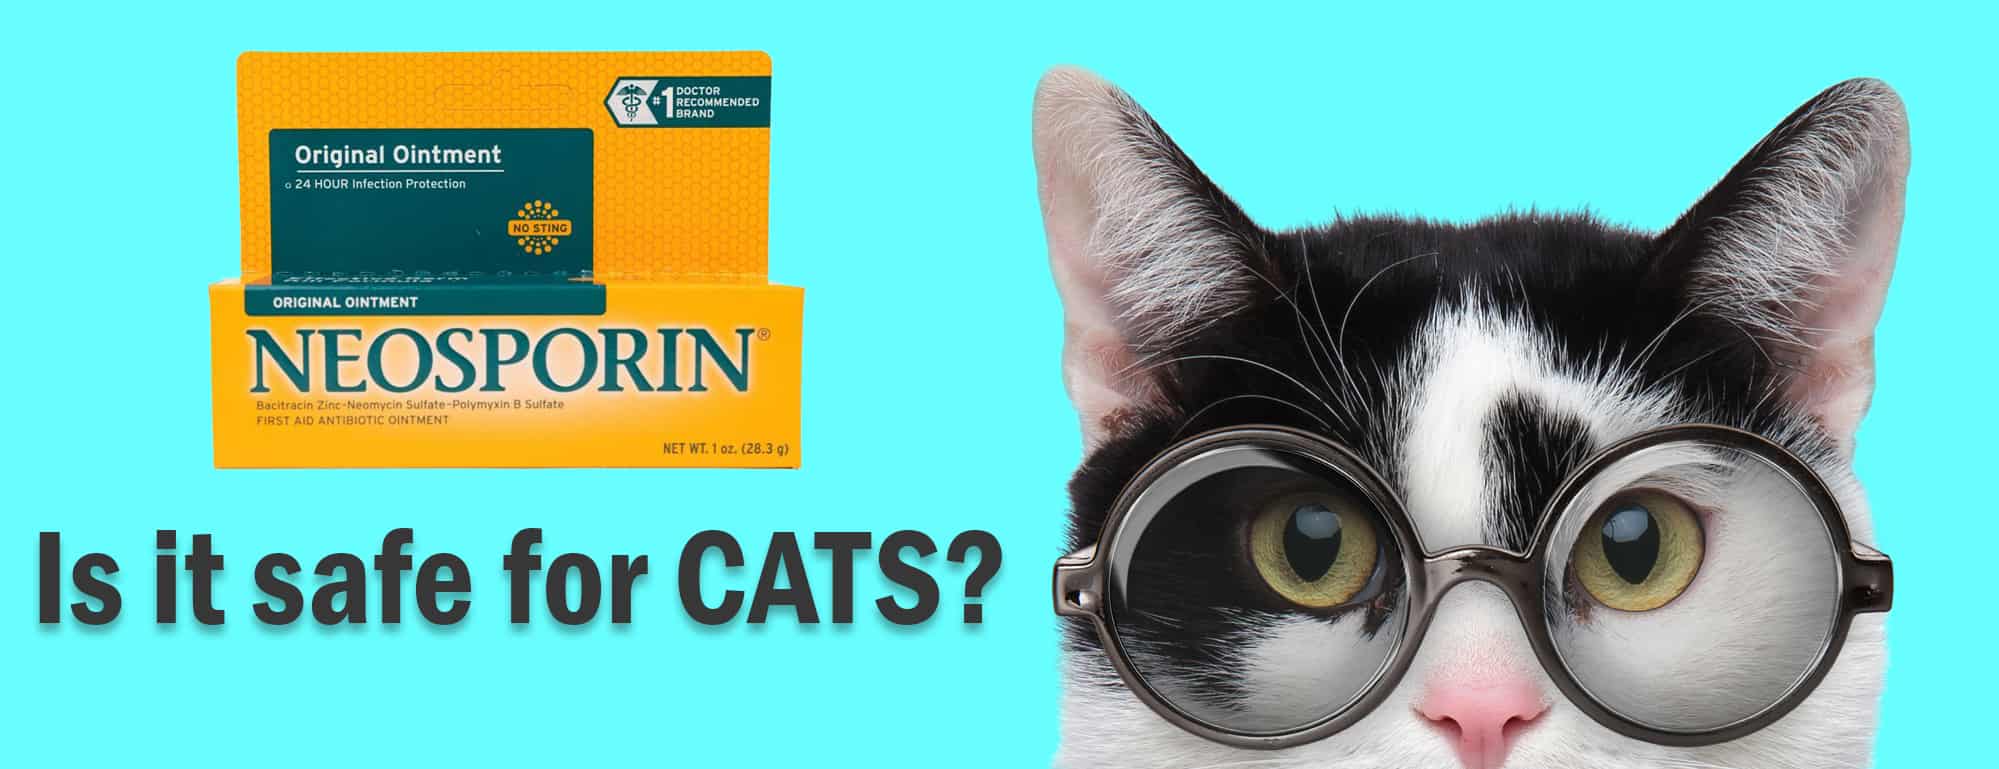 Neosporin - Is het veilig voor katten